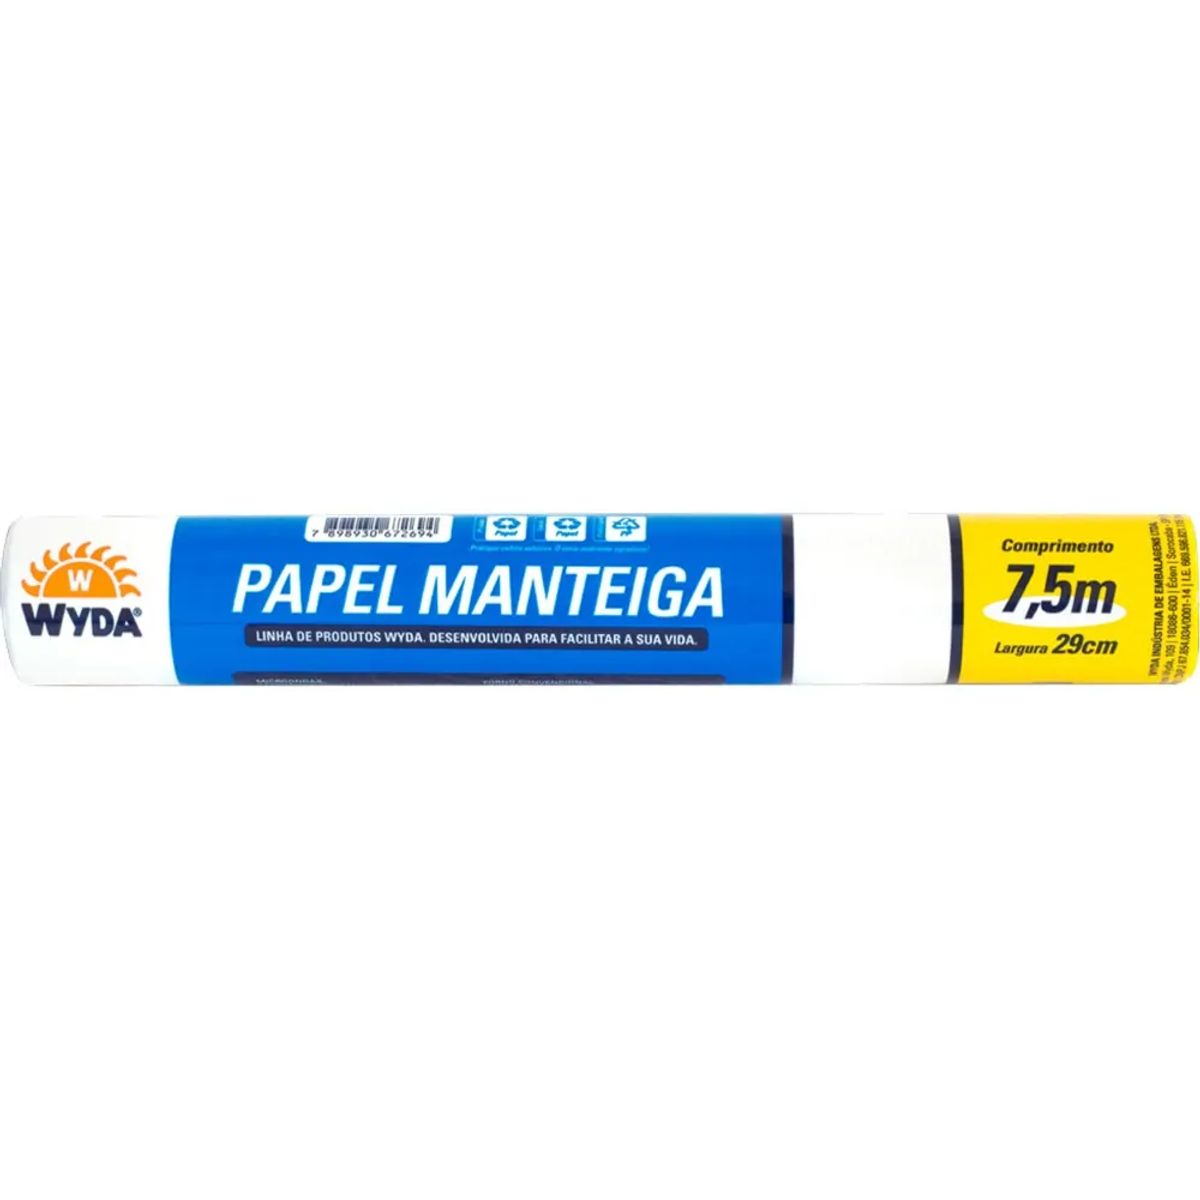 Papel Manteiga Wyda 7,5mX29cm image number 0